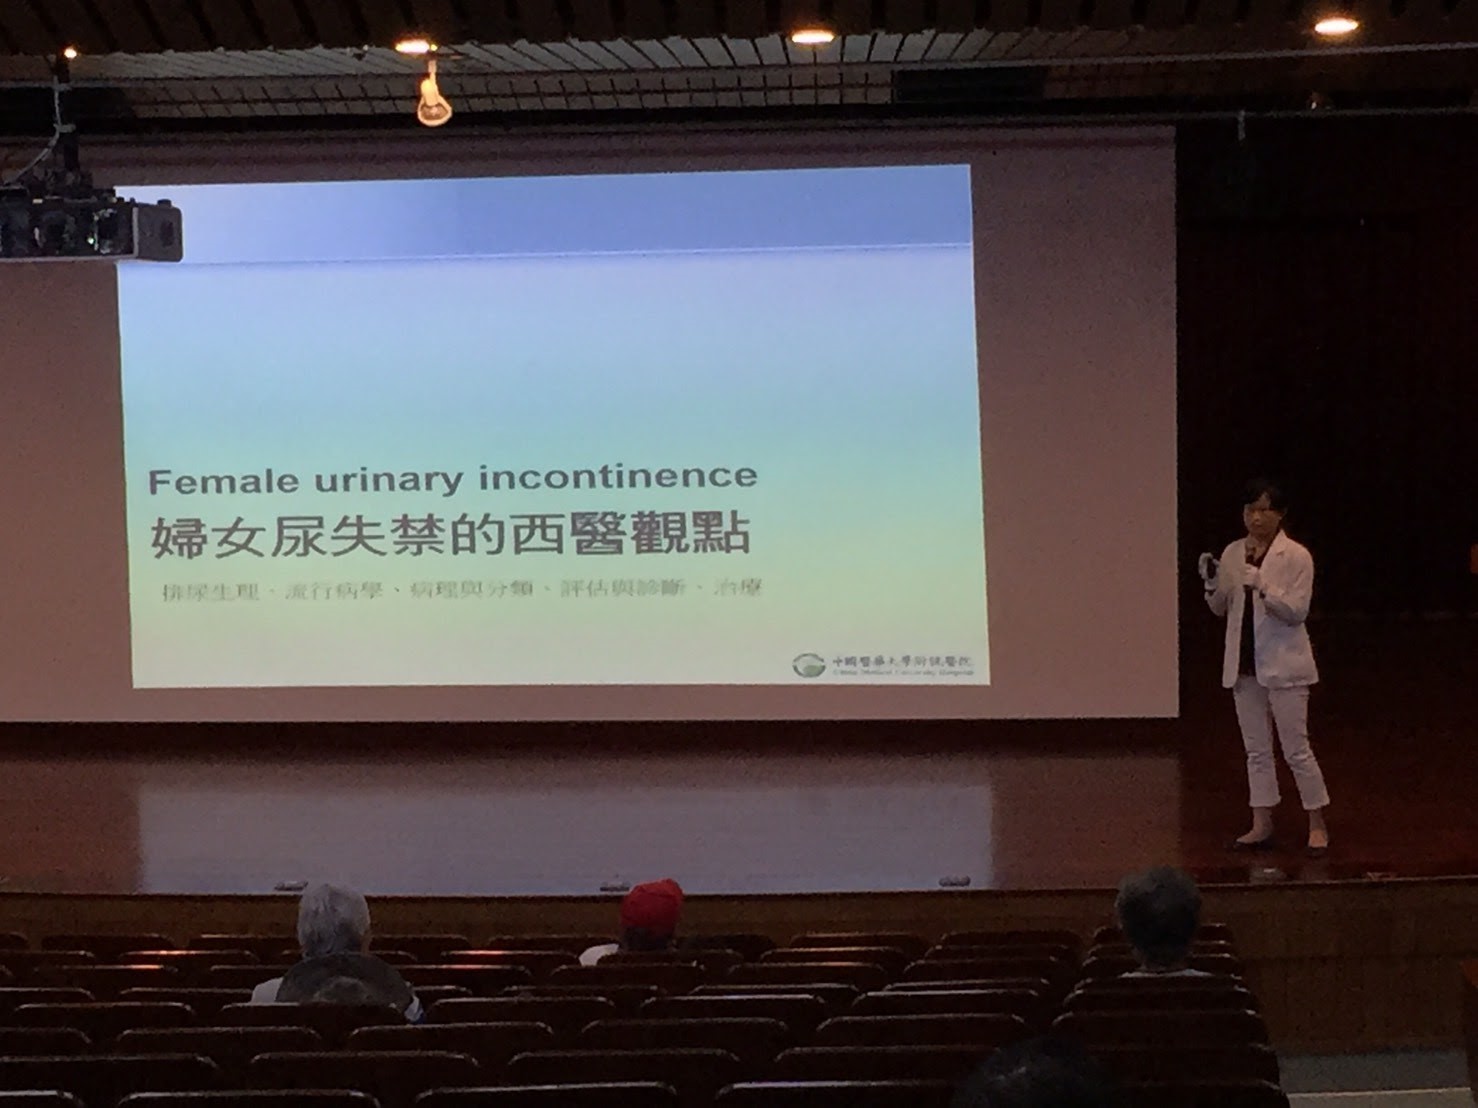 張尹人醫師於台中市中醫師公會進行健康講座：婦女尿失禁的中西醫觀點